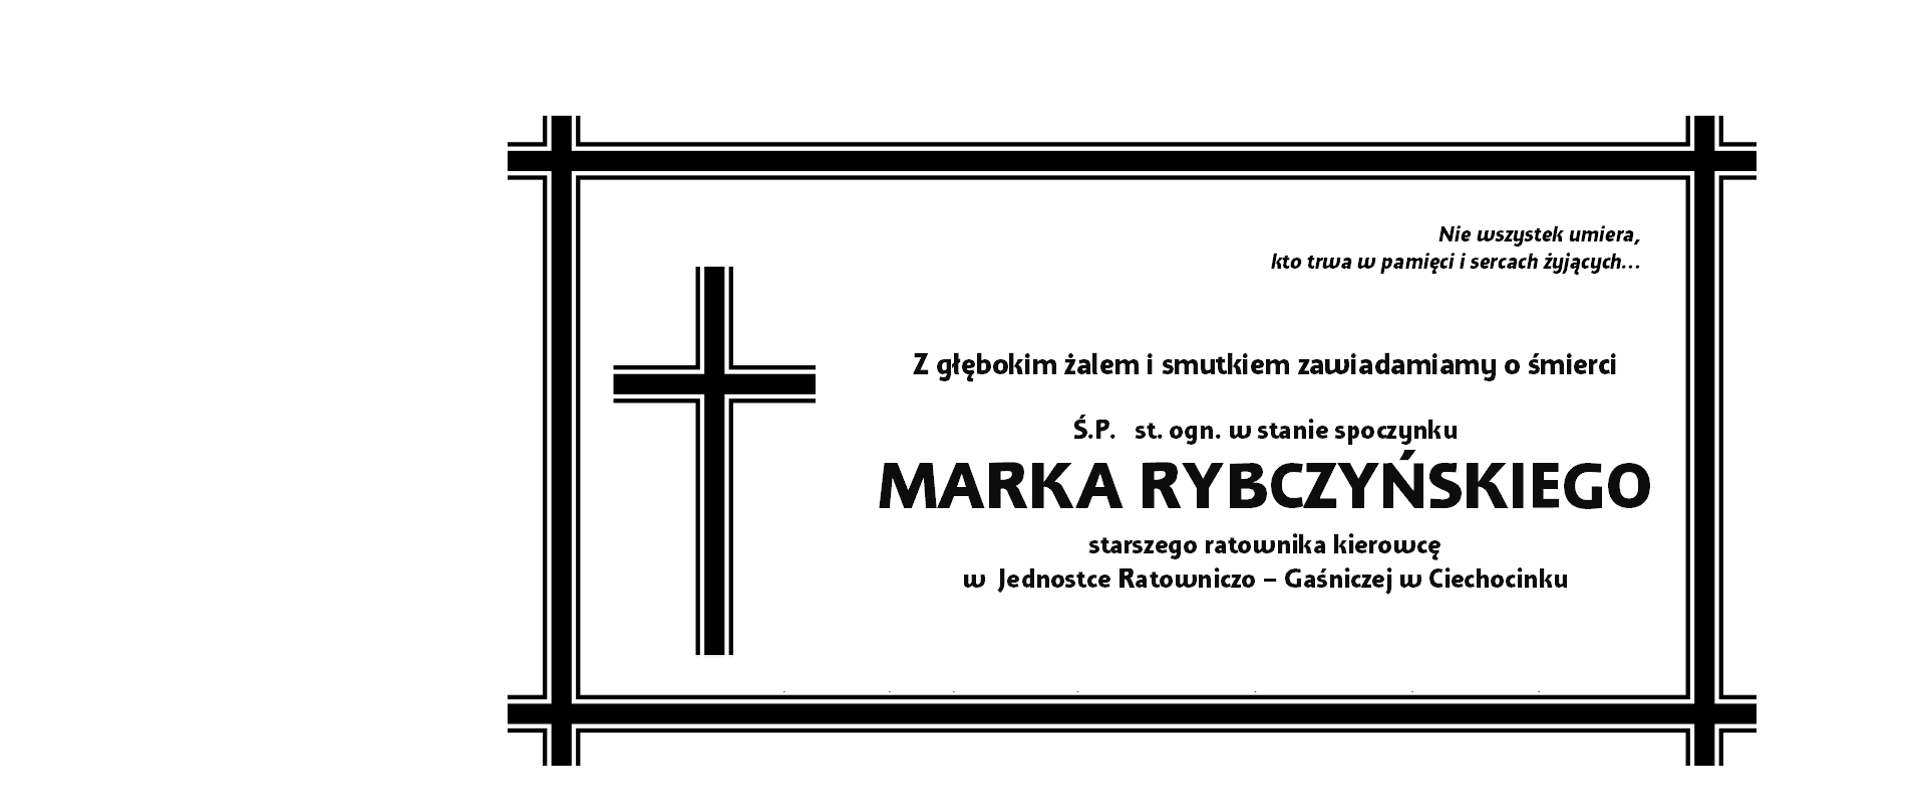 Grafika zawiera informacje pogrzebowe Marka Rybczyńskiego